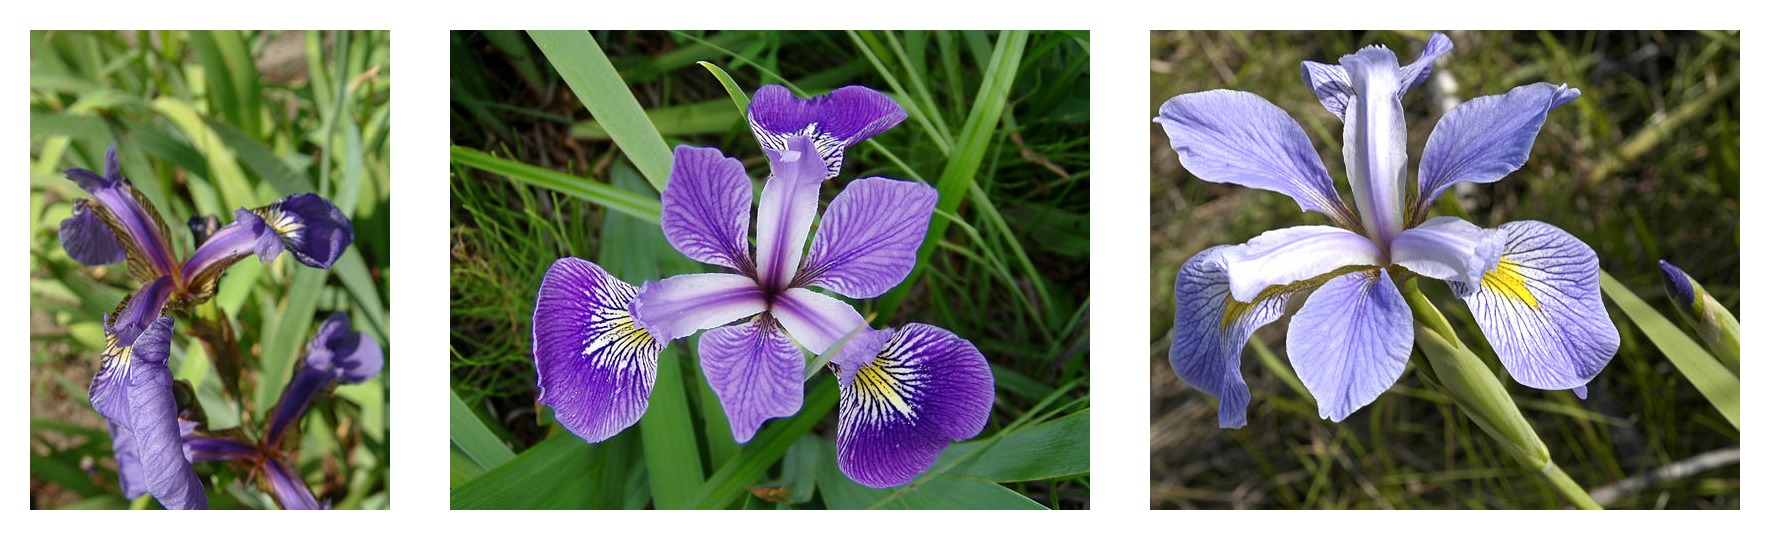 3つのアイリス種（Iris setosa、Iris virginica、およびIris versicolor）について比較した花びらの形状